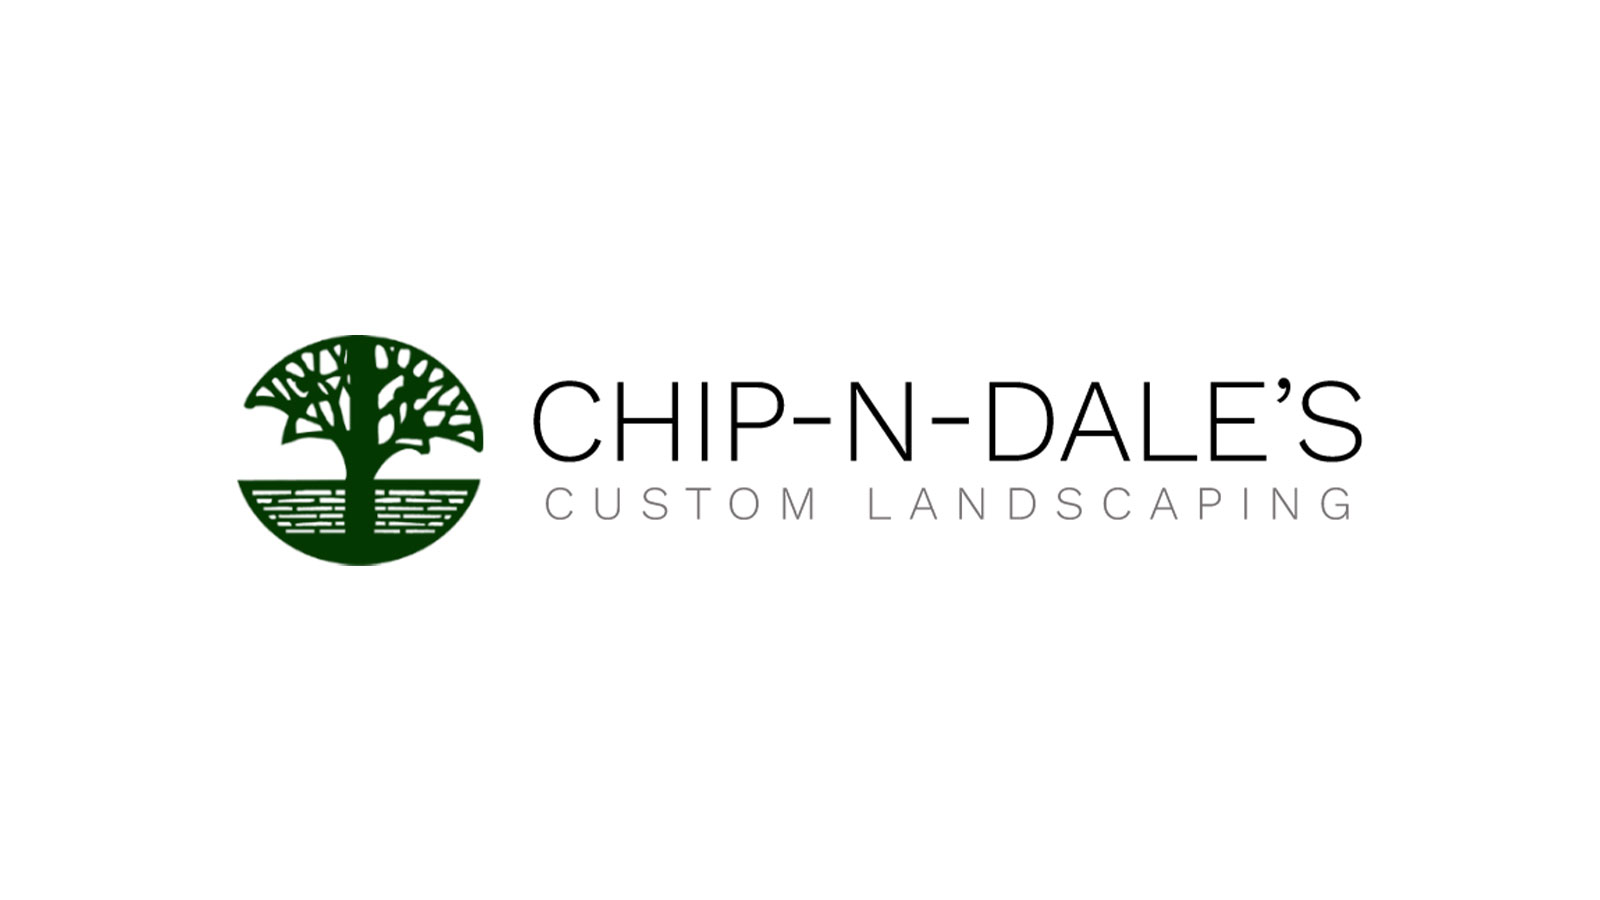 (c) Chip-n-daleslandscaping.com